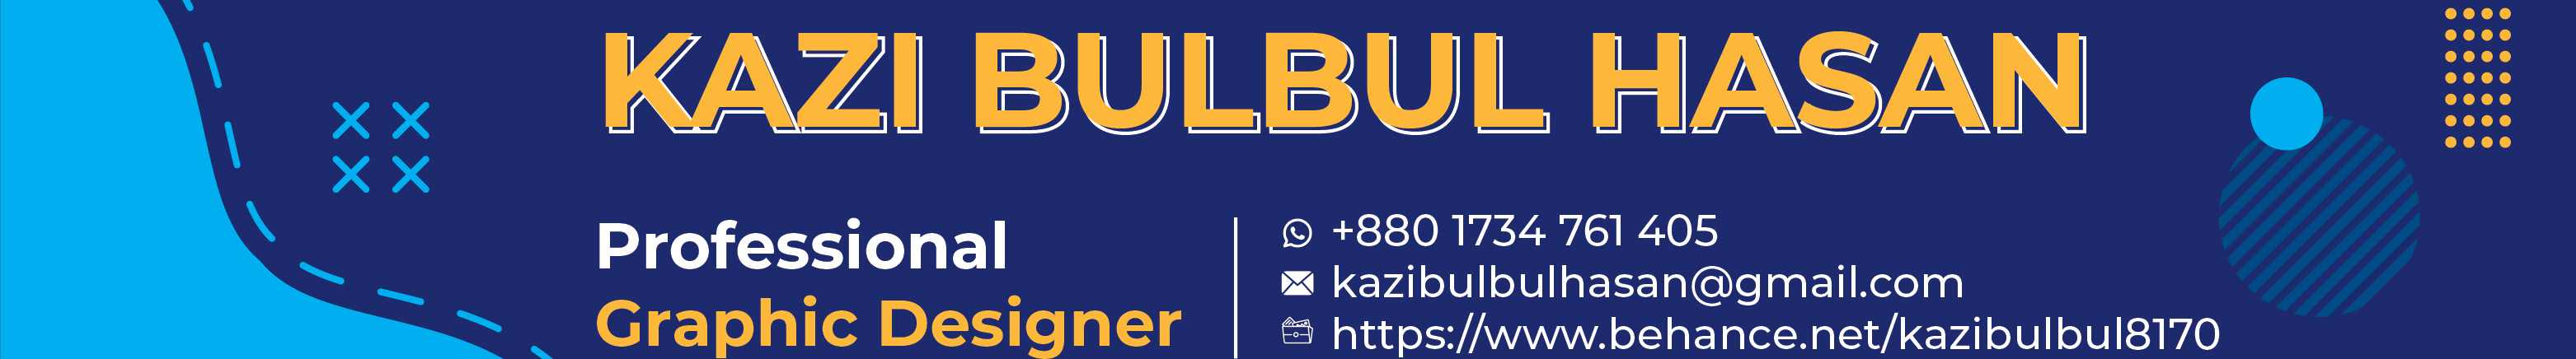 Kazi Bulbul Hasan's profile banner